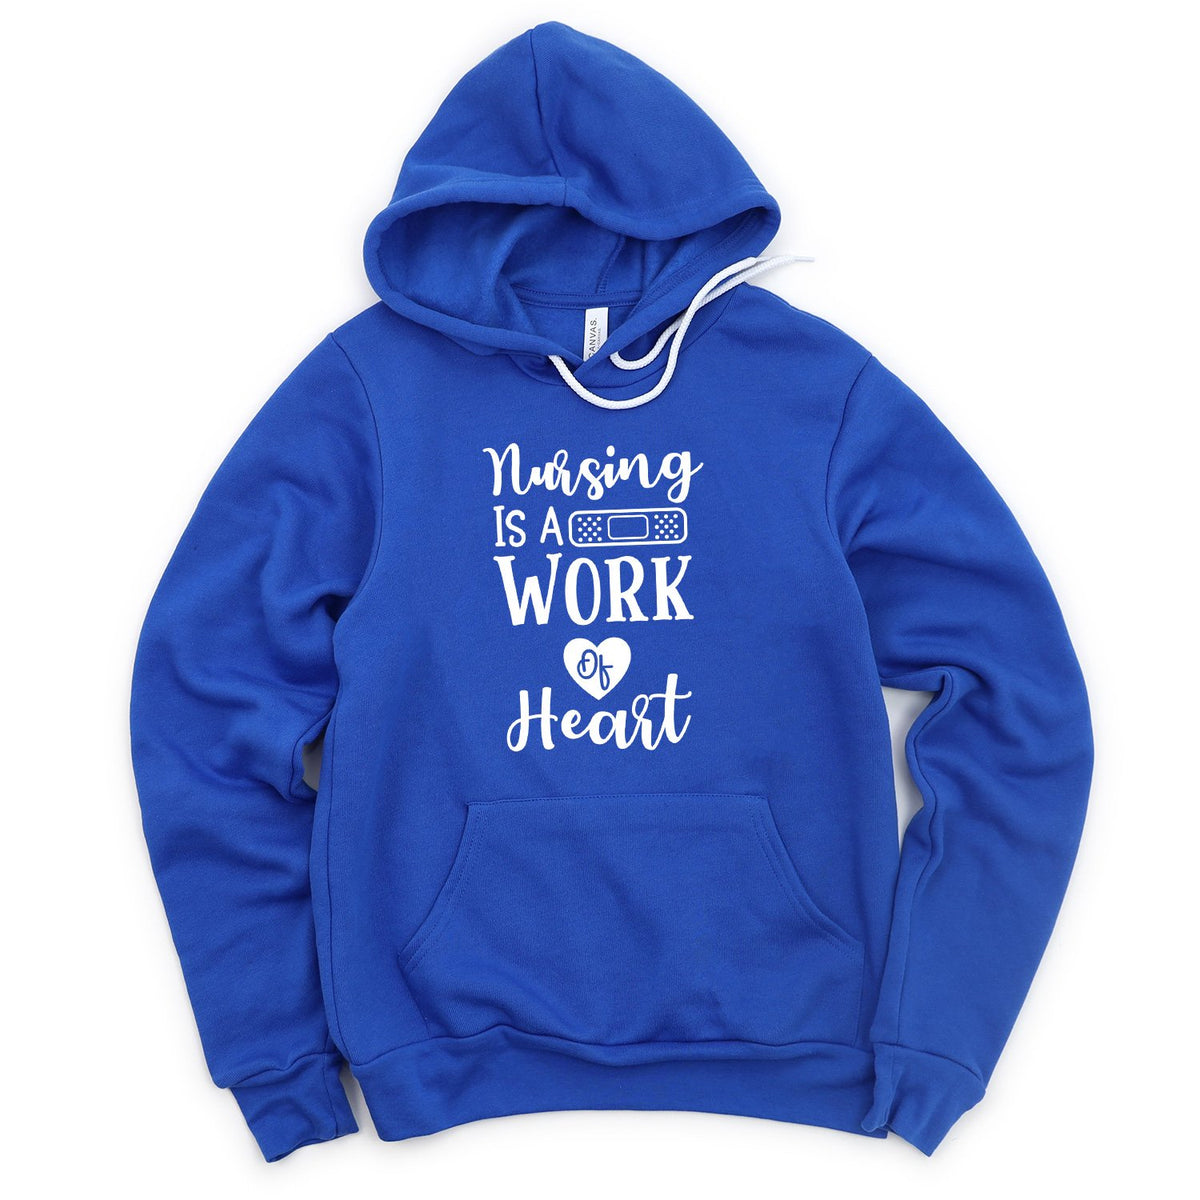 Nursing is A Work of Heart - Hoodie Sweatshirt